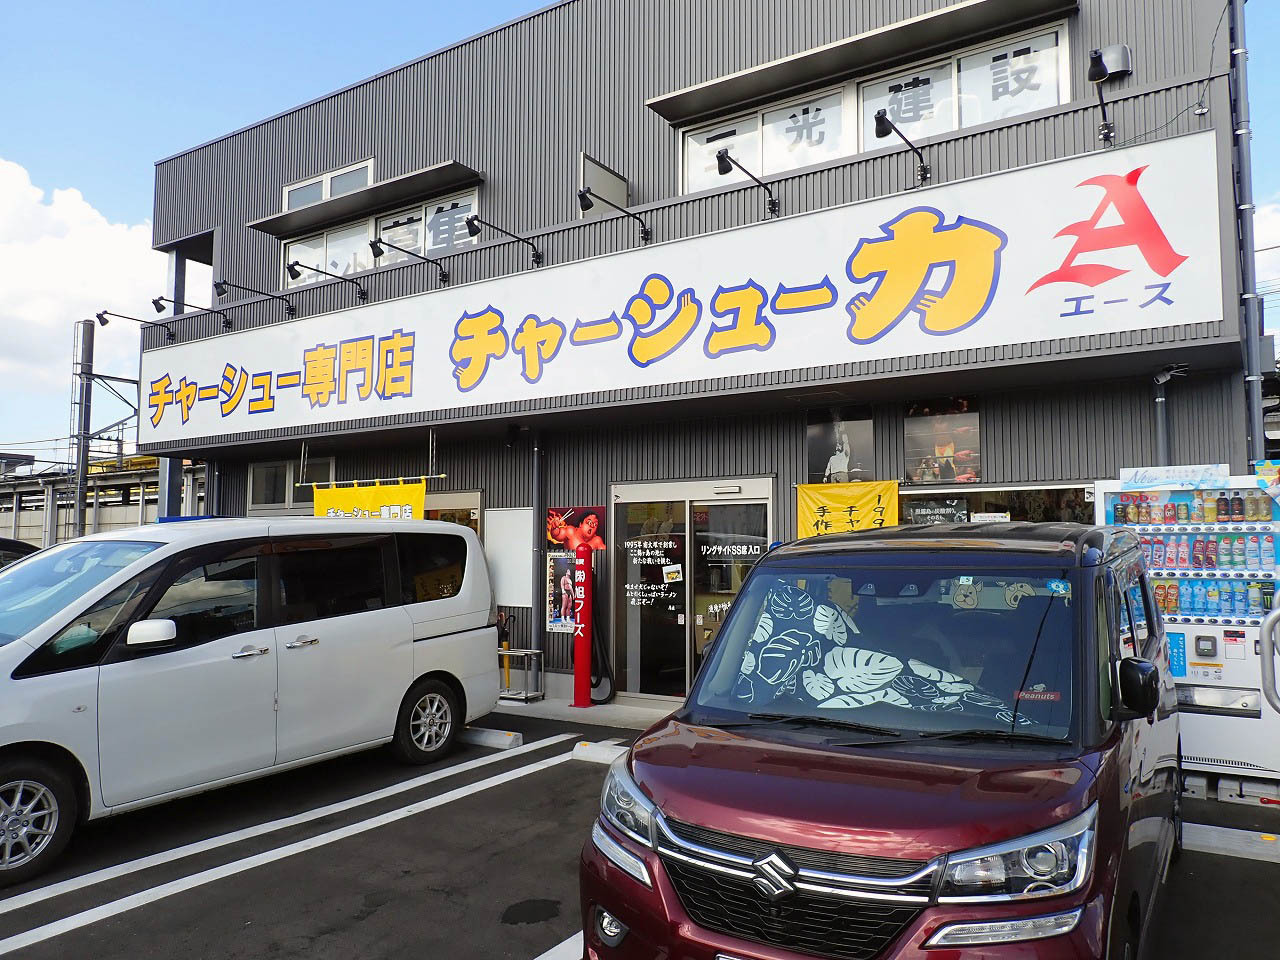 鶴ヶ島駅から徒歩約2分で、駐車場はお店の前に完備されています